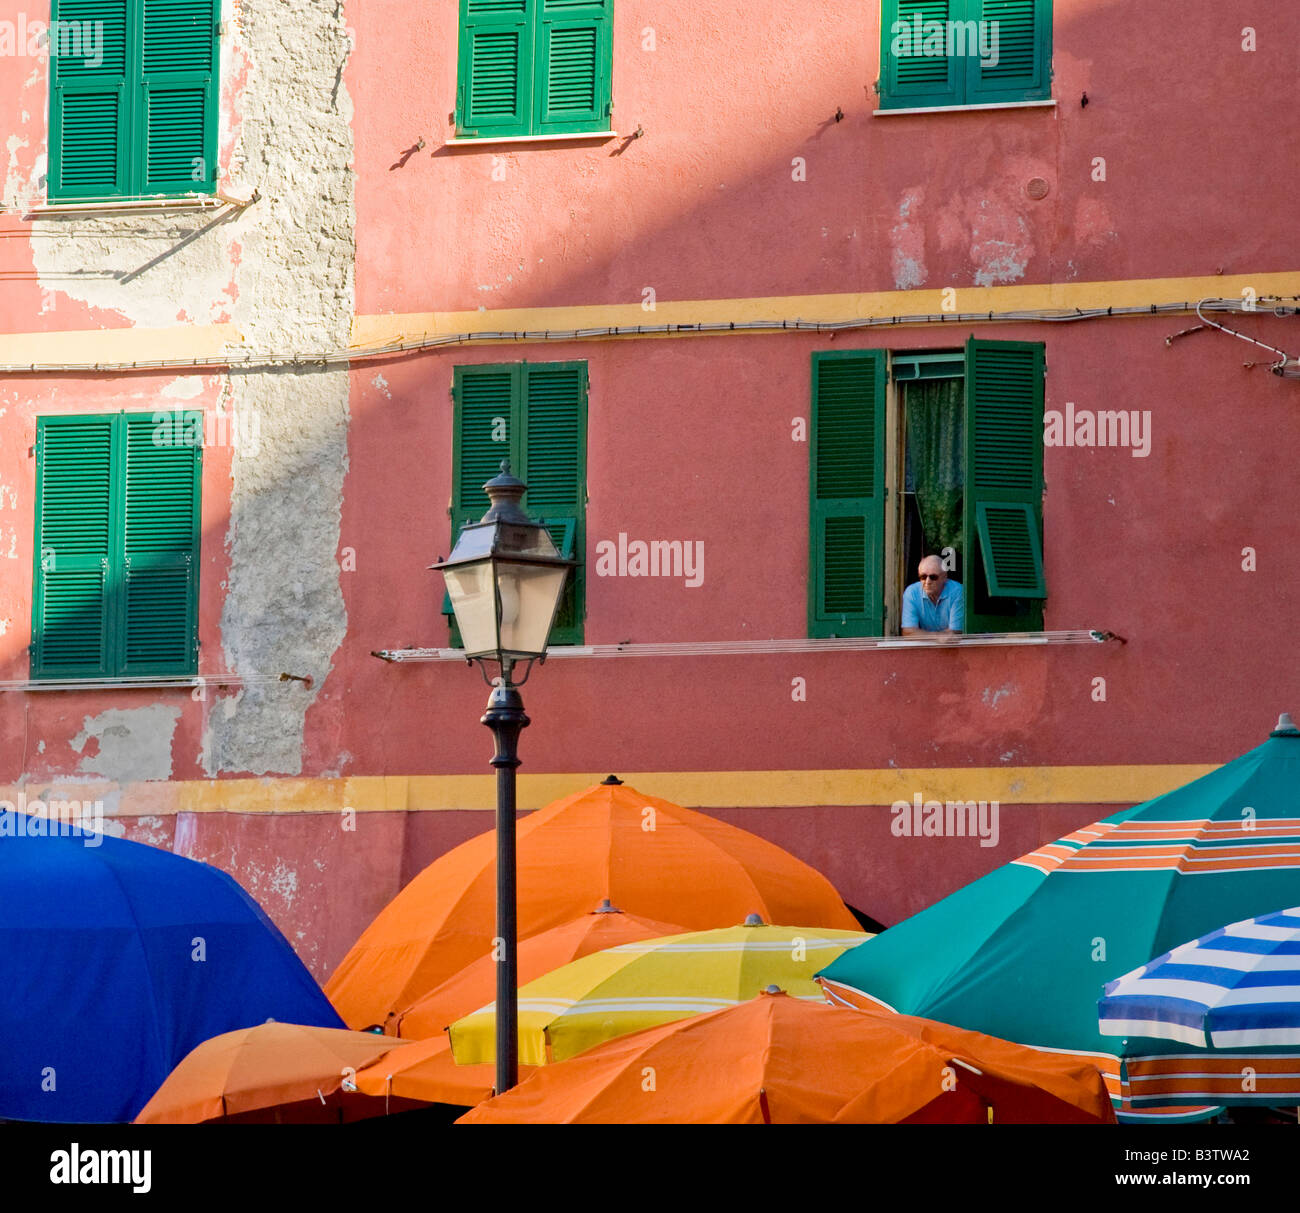 L'Europe, l'Italie, les Cinque Terre, Vernazza. L'homme de la fenêtre aux volets verts pairs parasols colorés ci-dessus. Banque D'Images